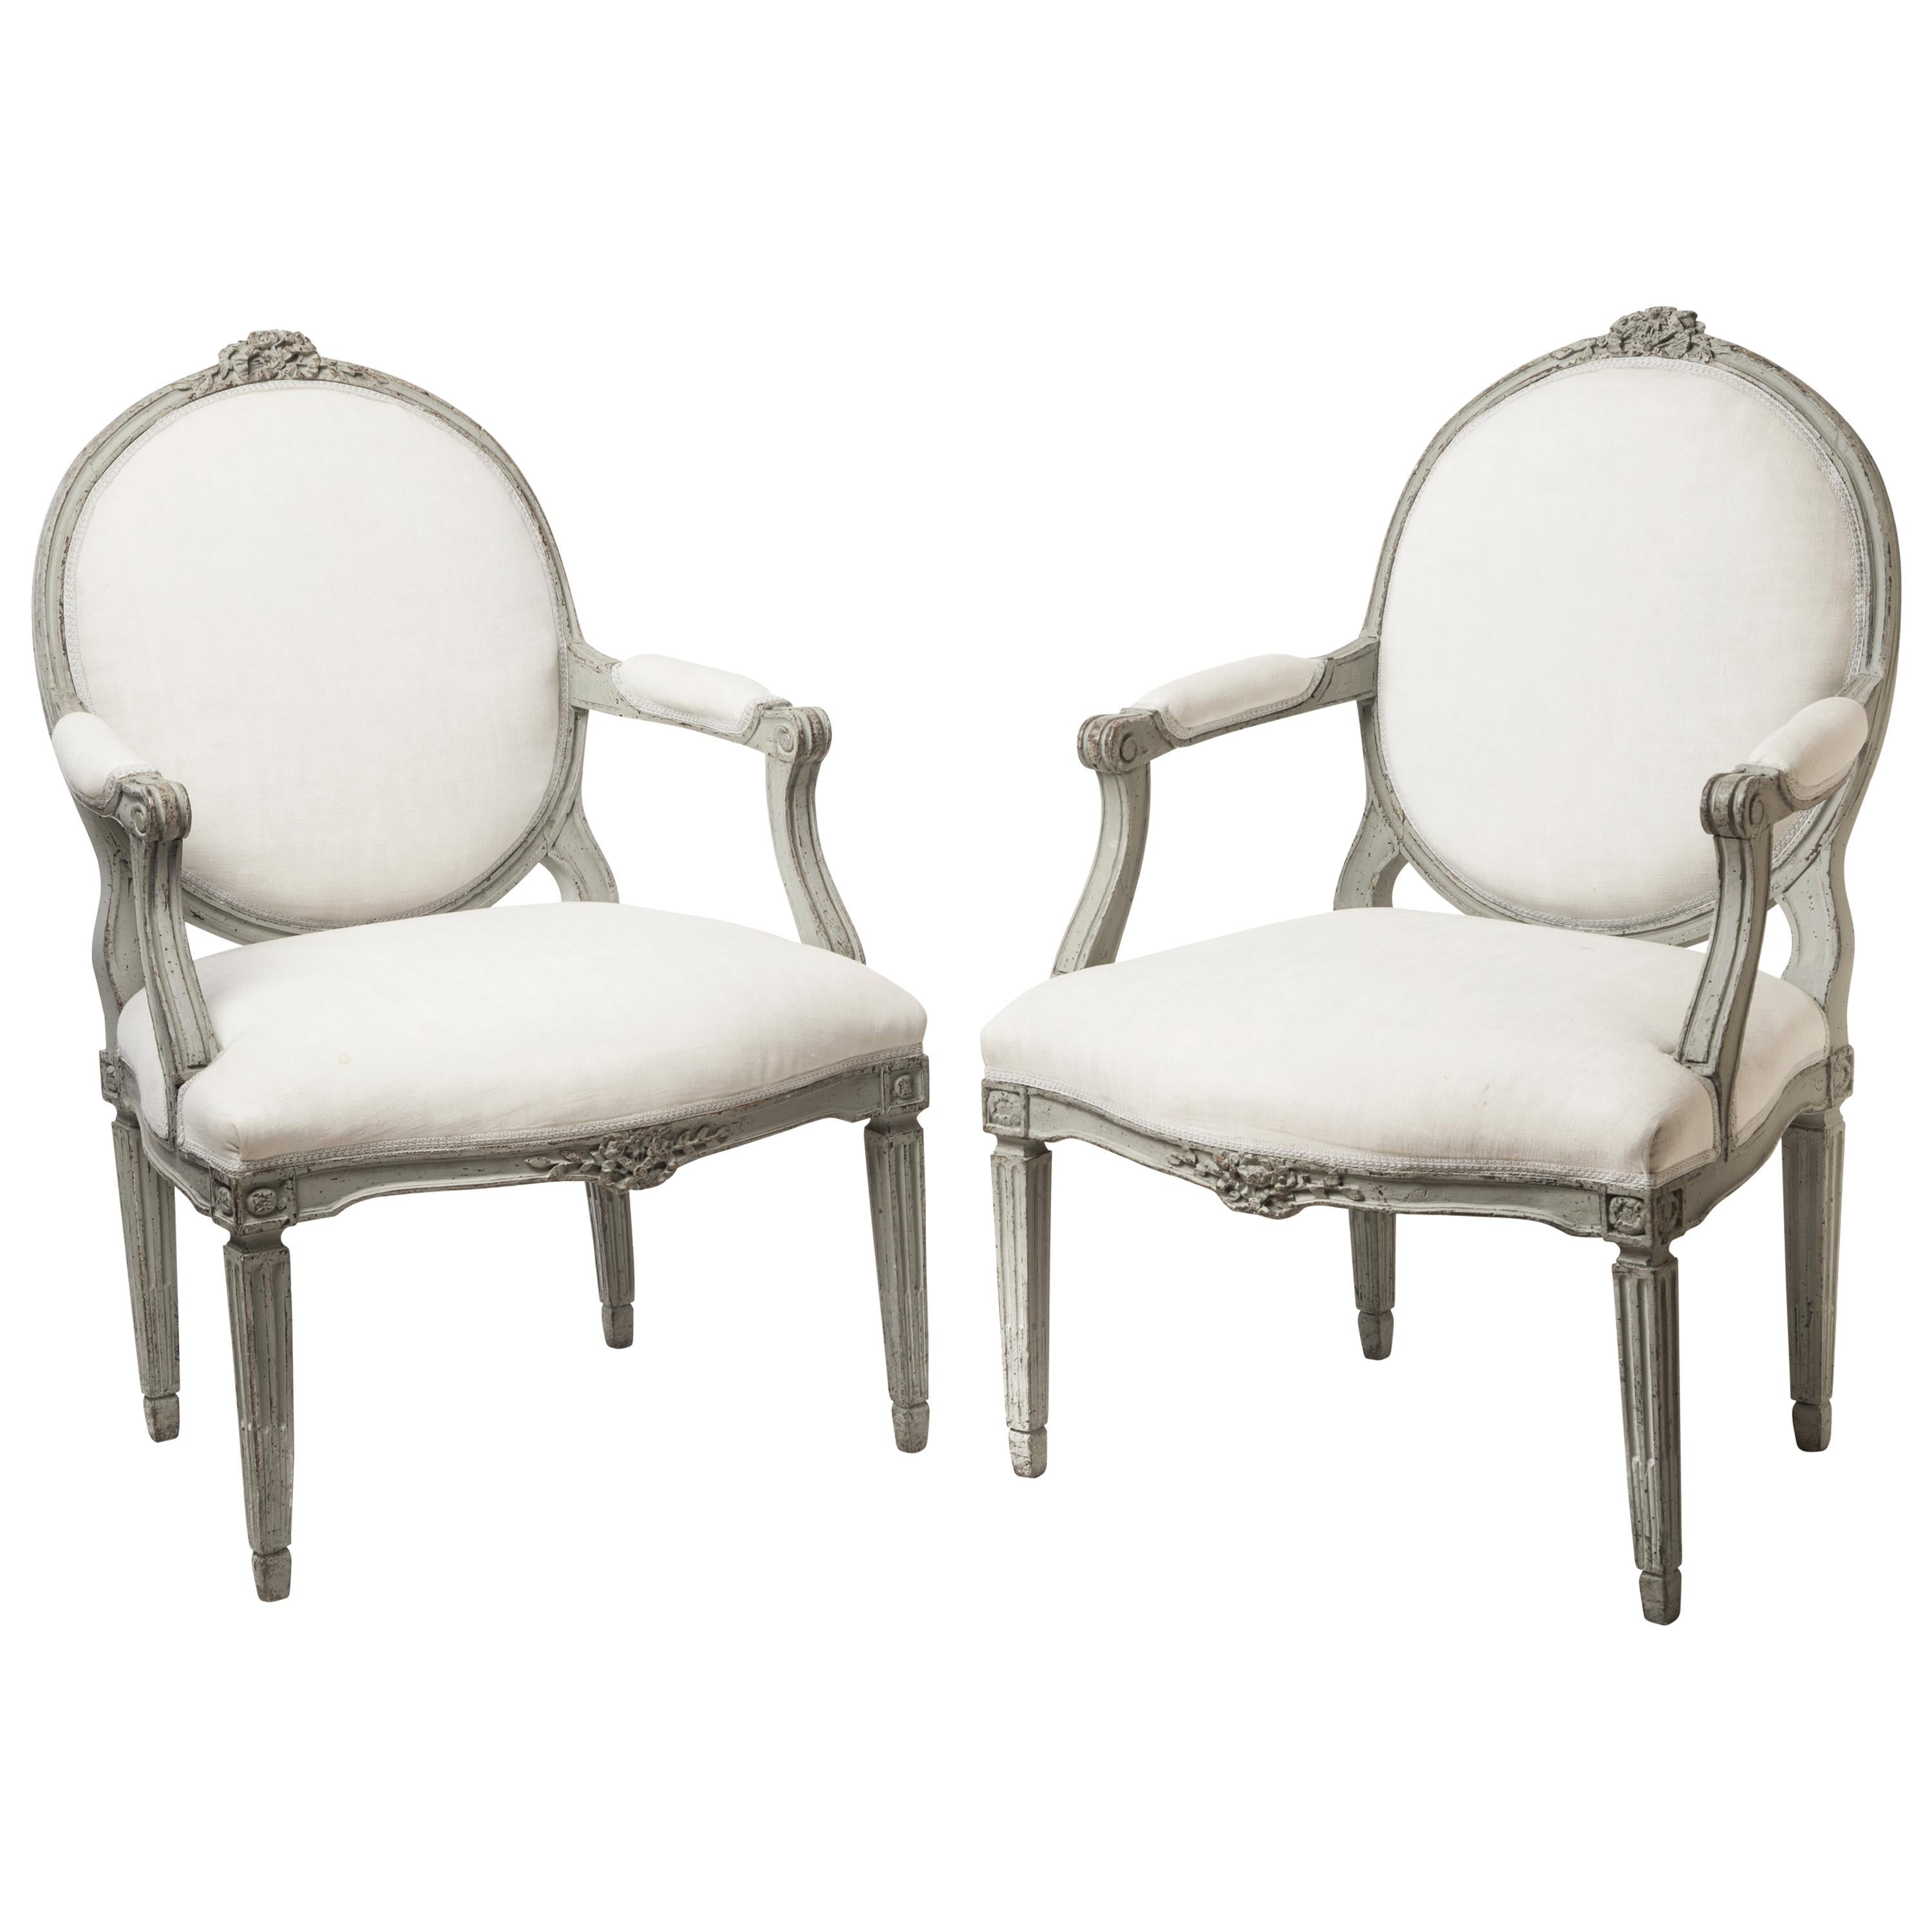 Paire d'anciens fauteuils/fauteuils suédois du XVIIIe siècle